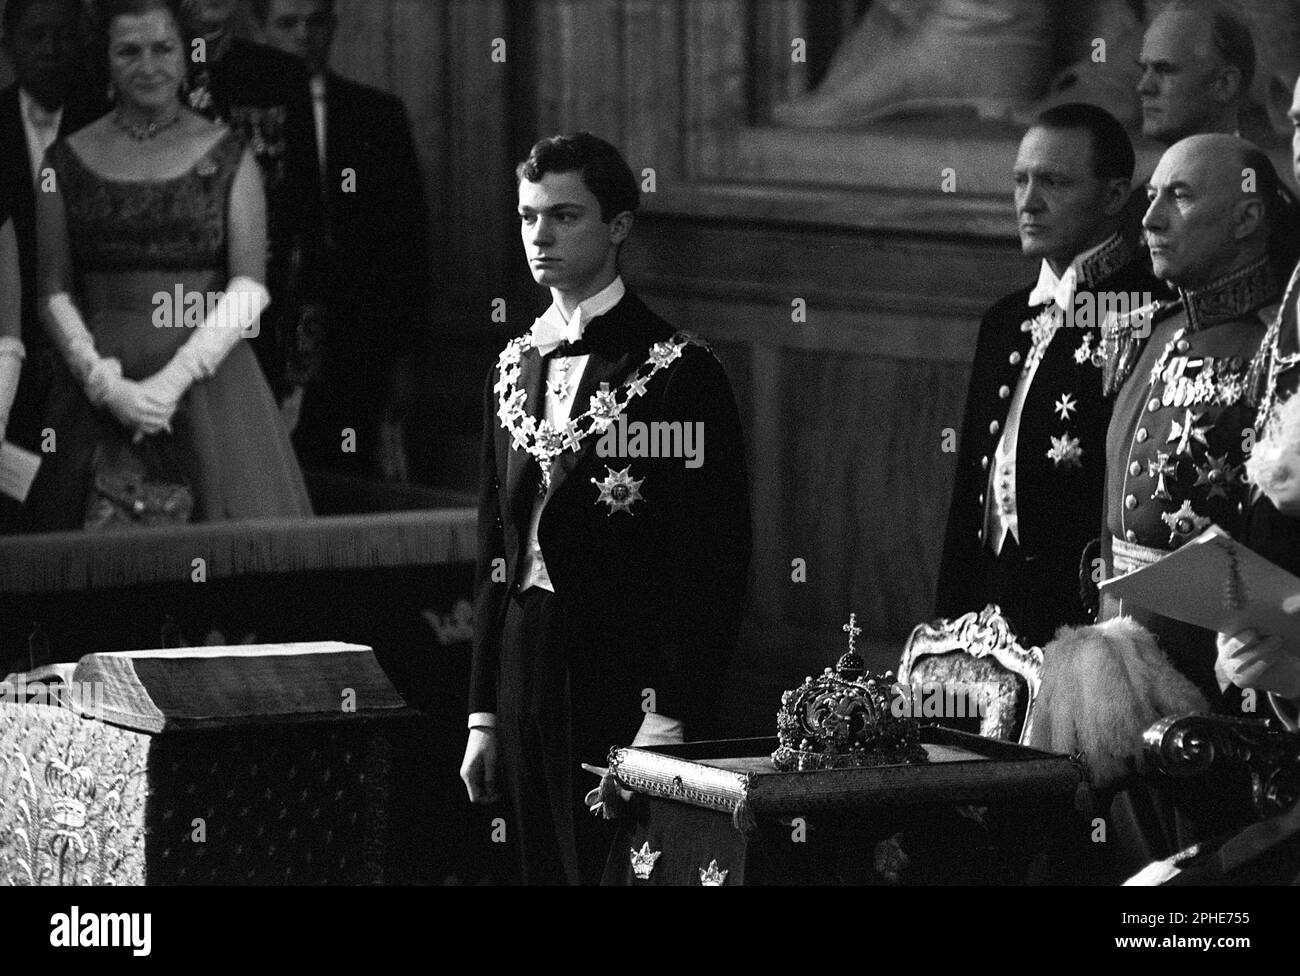 Carl XVI Gustaf, König von Schweden. Geboren am 30. april 1946. Abbildung bei der feierlichen Eröffnung des schwedischen parlaments 1966. König Gustaf VI. Adolf sitzt in der Mitte auf einem Thron, von wo aus er seine Rede vor dem parlament hielt. Stockfoto